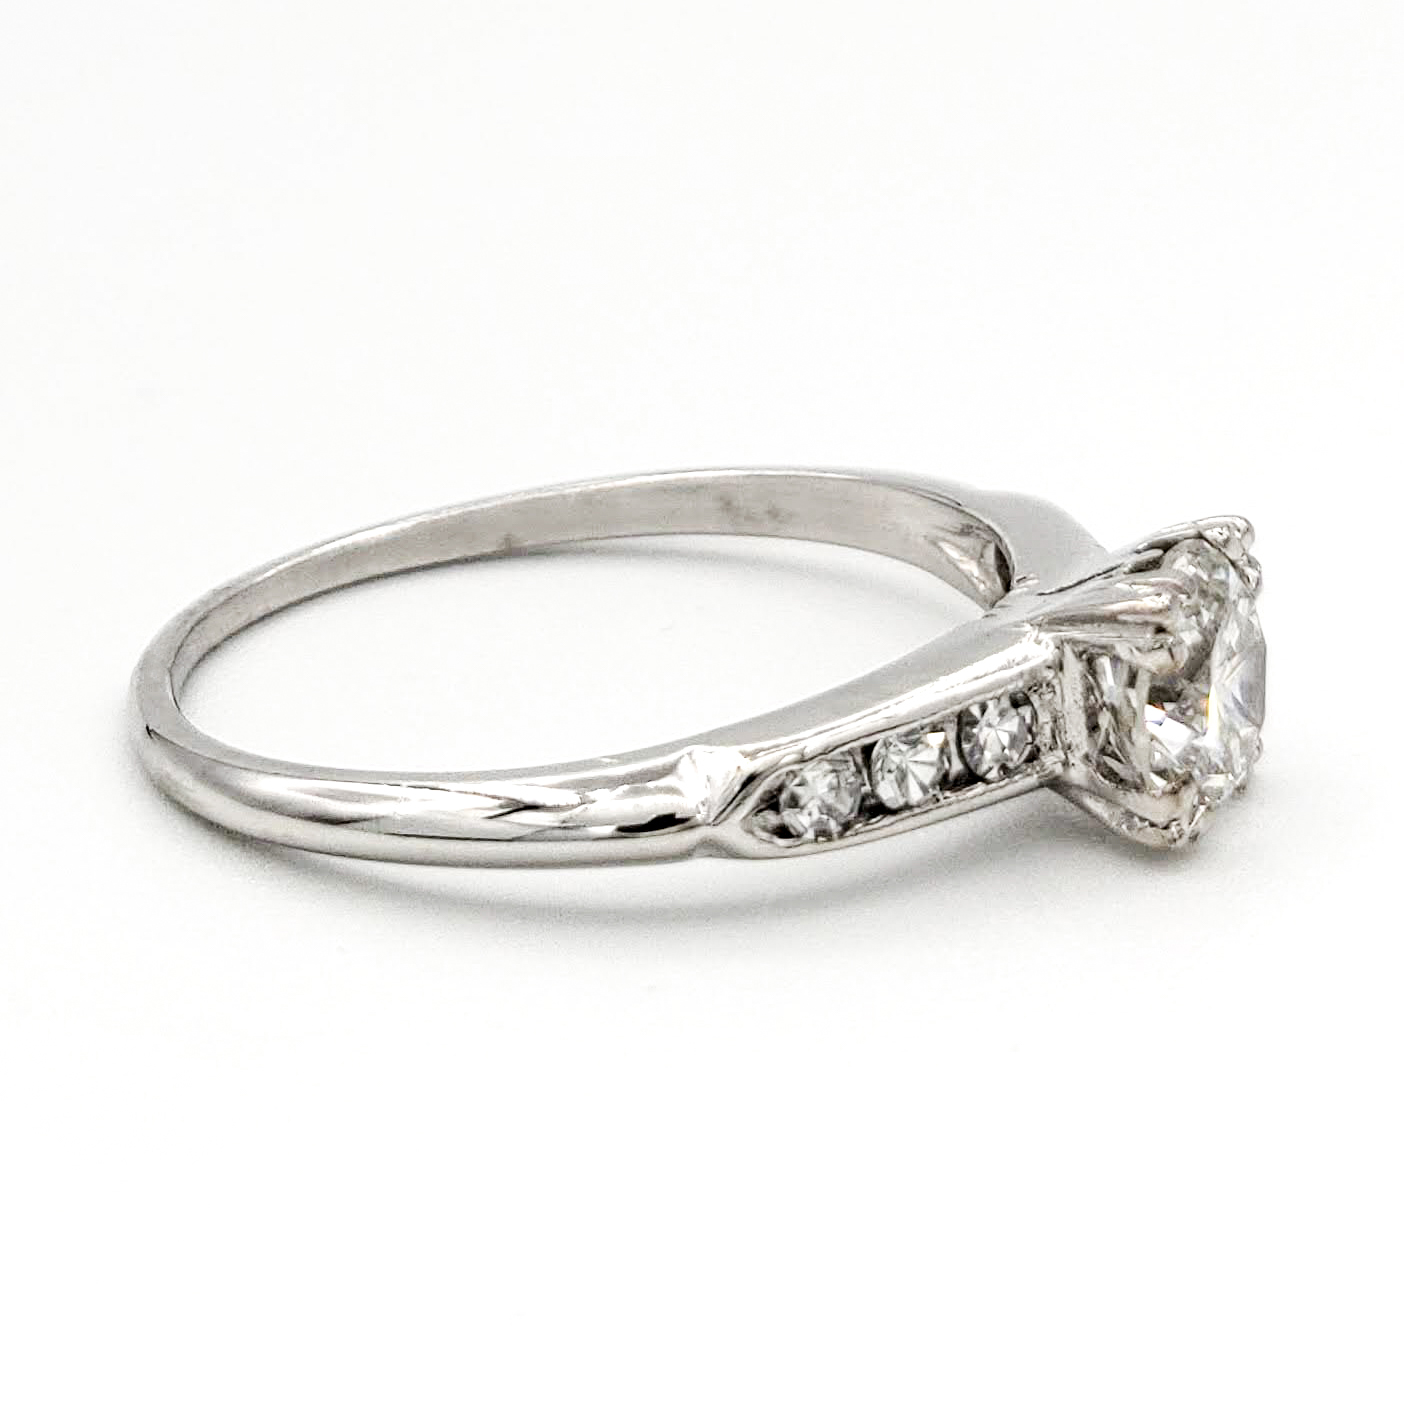 vintage-platinum-engagement-ring-with-0-56-carat-round-brilliant-cut-diamond-egl-h-vs2